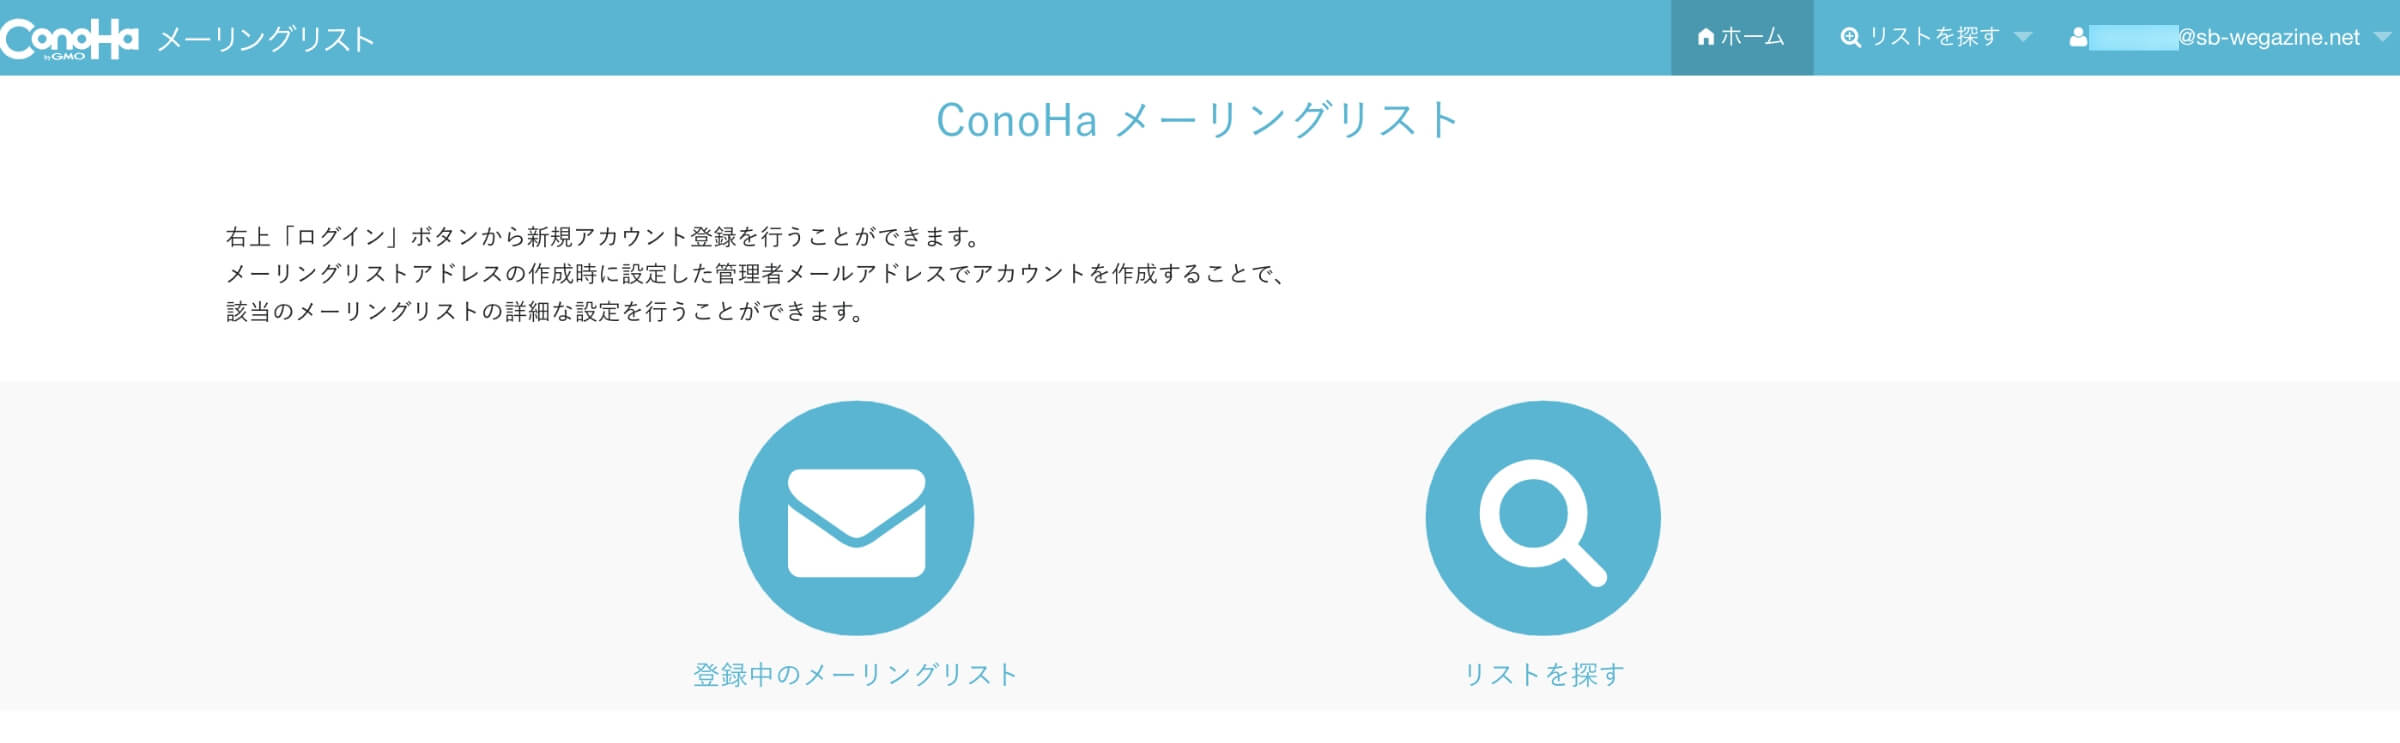 ConoHa WINGのメーリングリストのホーム画面